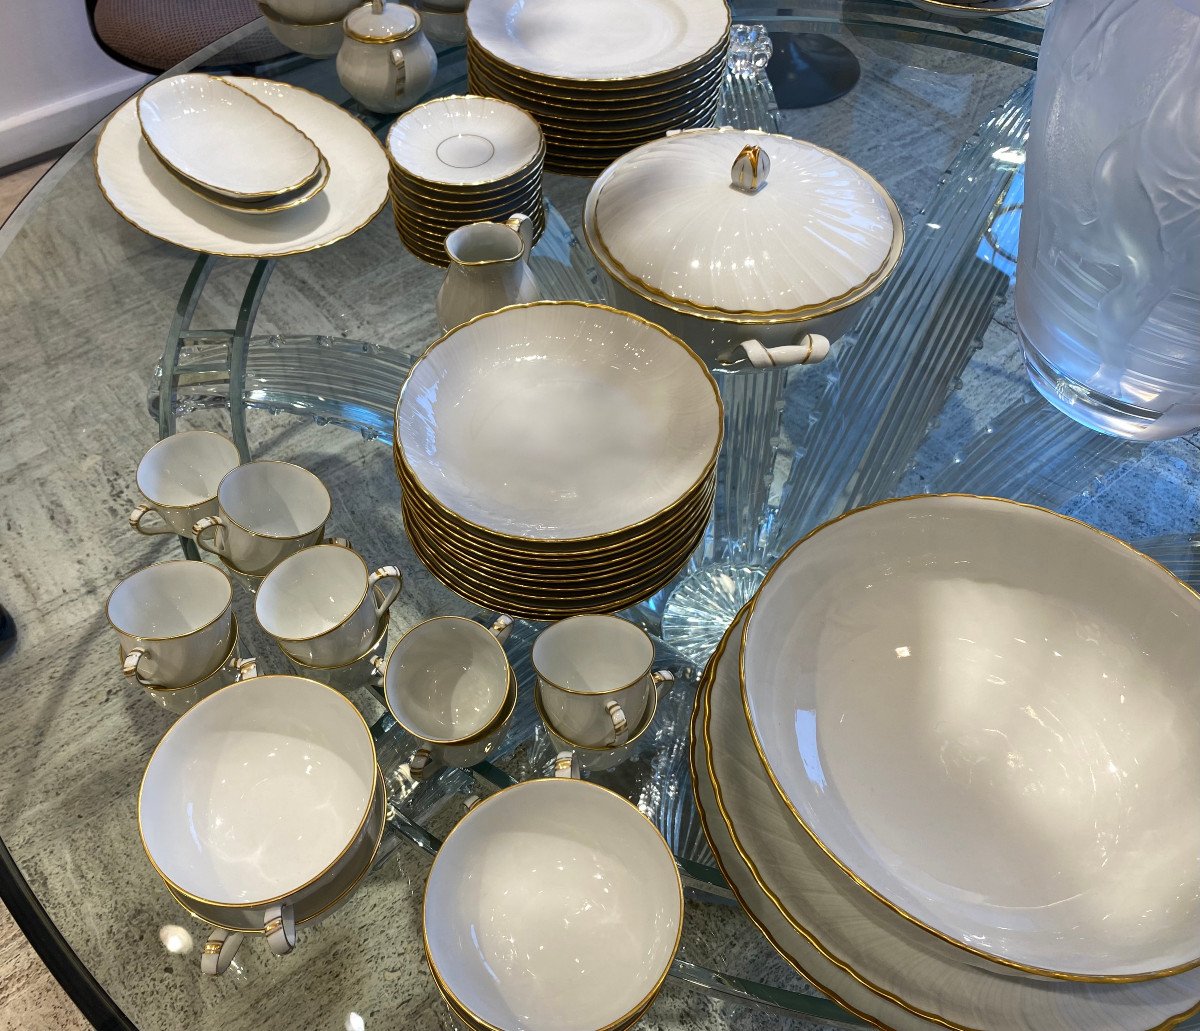 Service de table vaisselle en porcelaine - Centre Vaisselle - Porcelaine  blanche et décorée, plats et assiettes en porcelaine